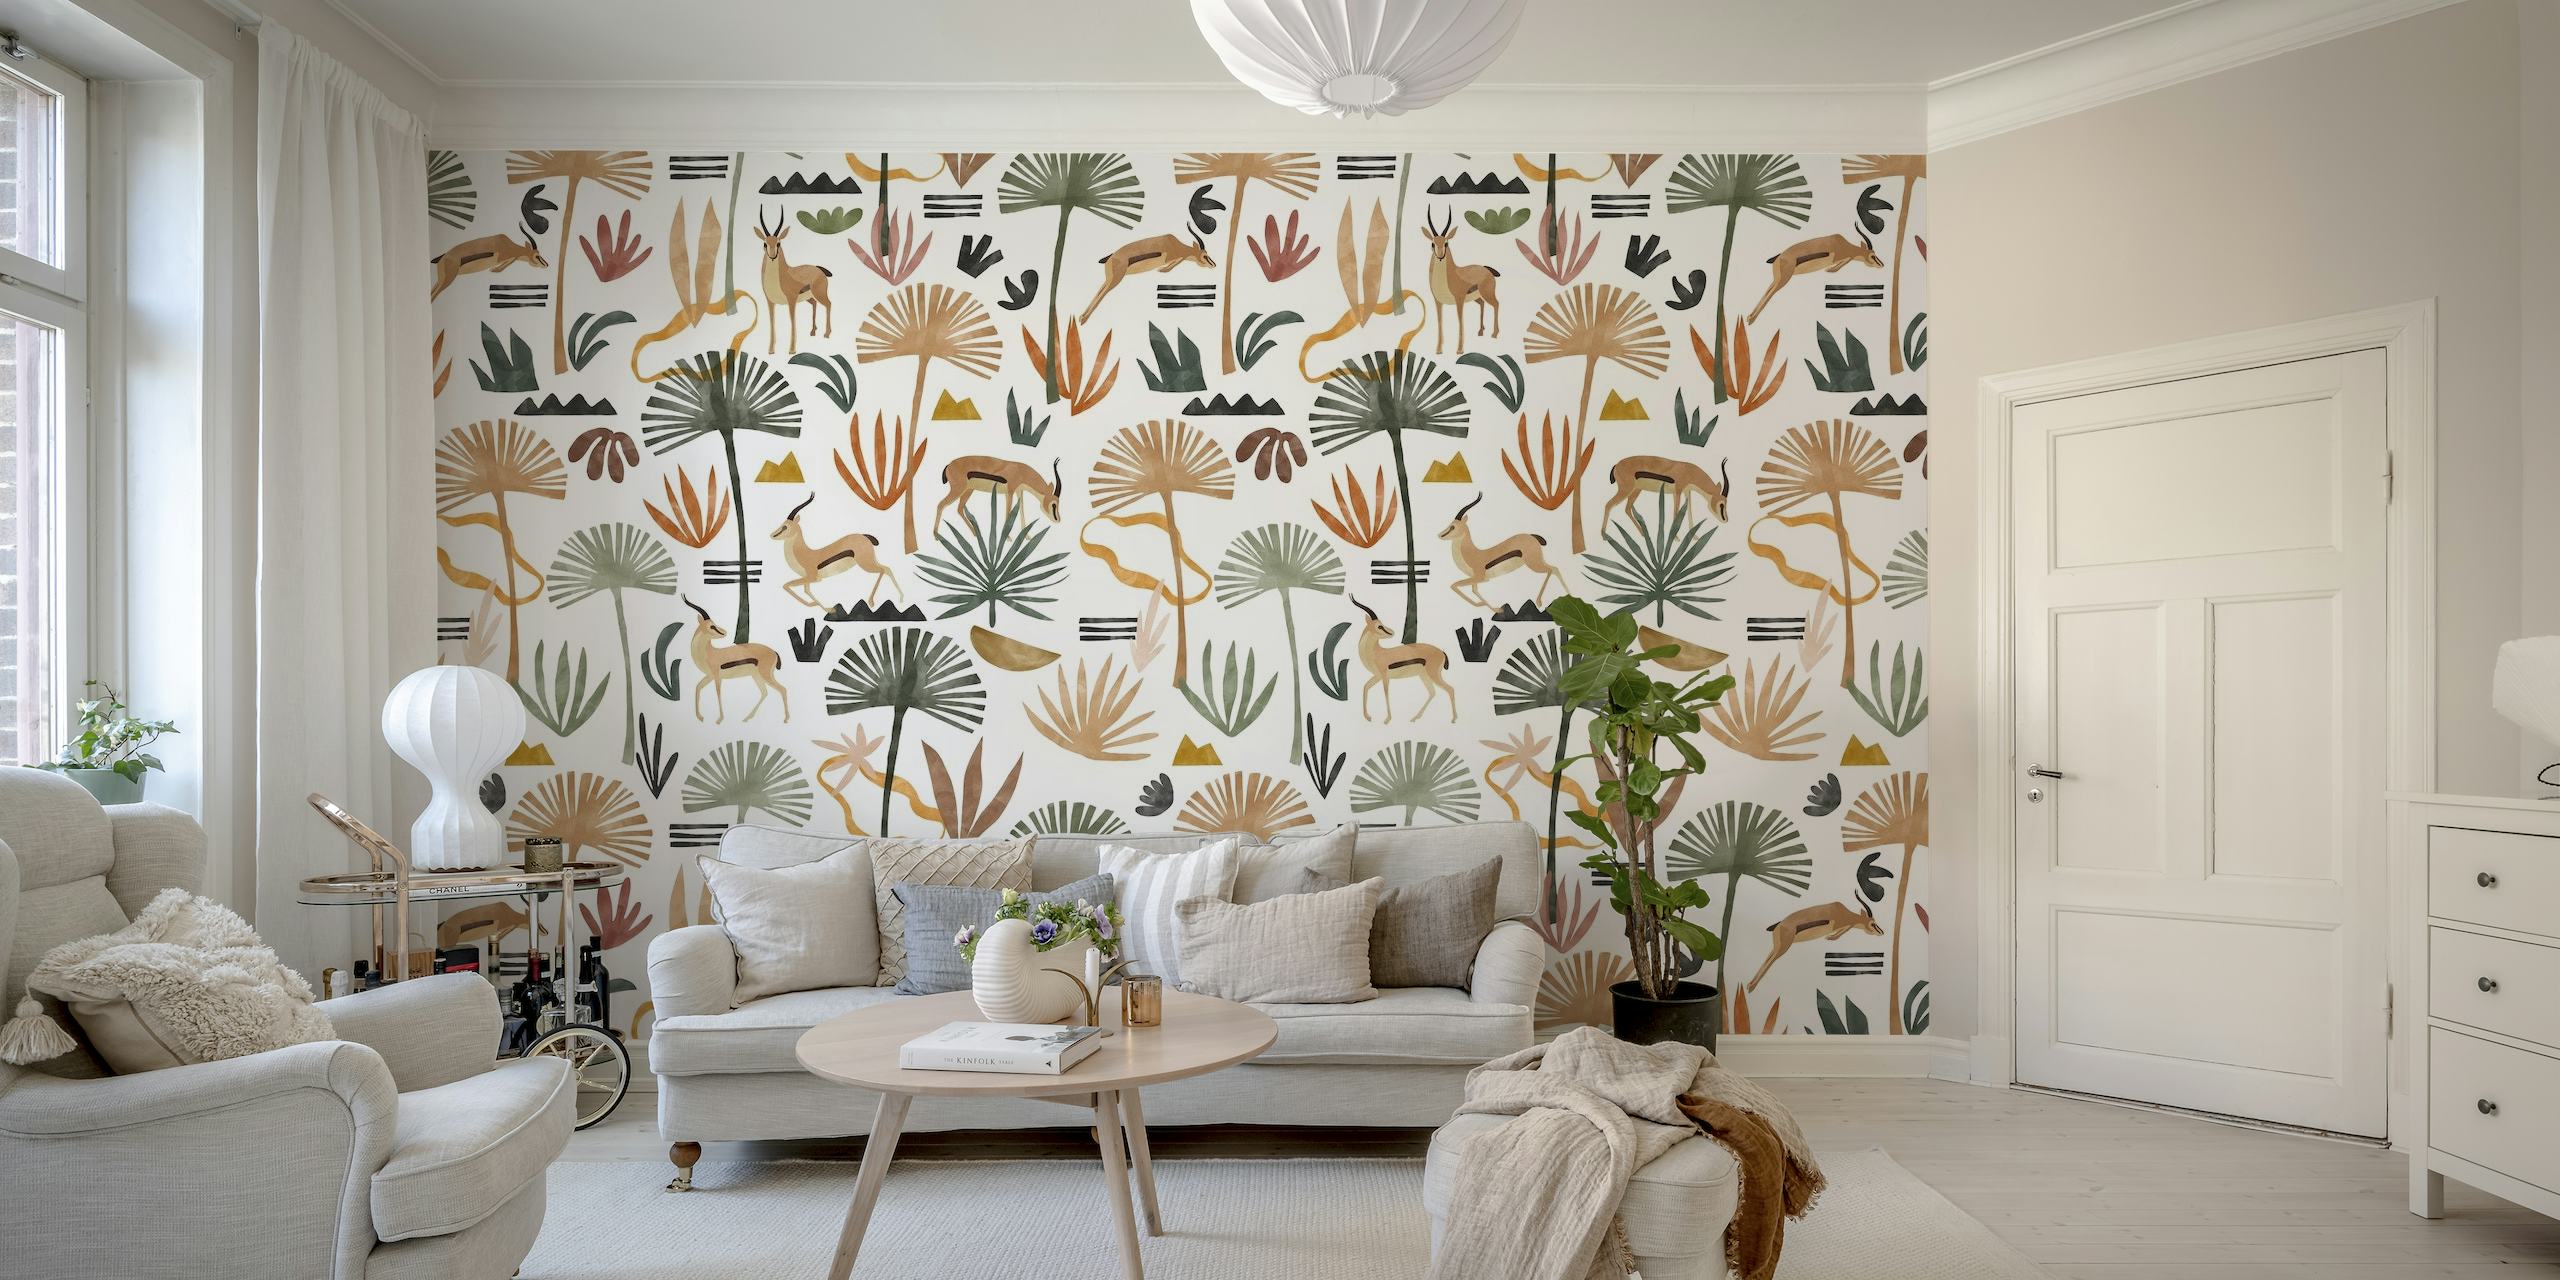 African savanna pattern wallpaper with animals running